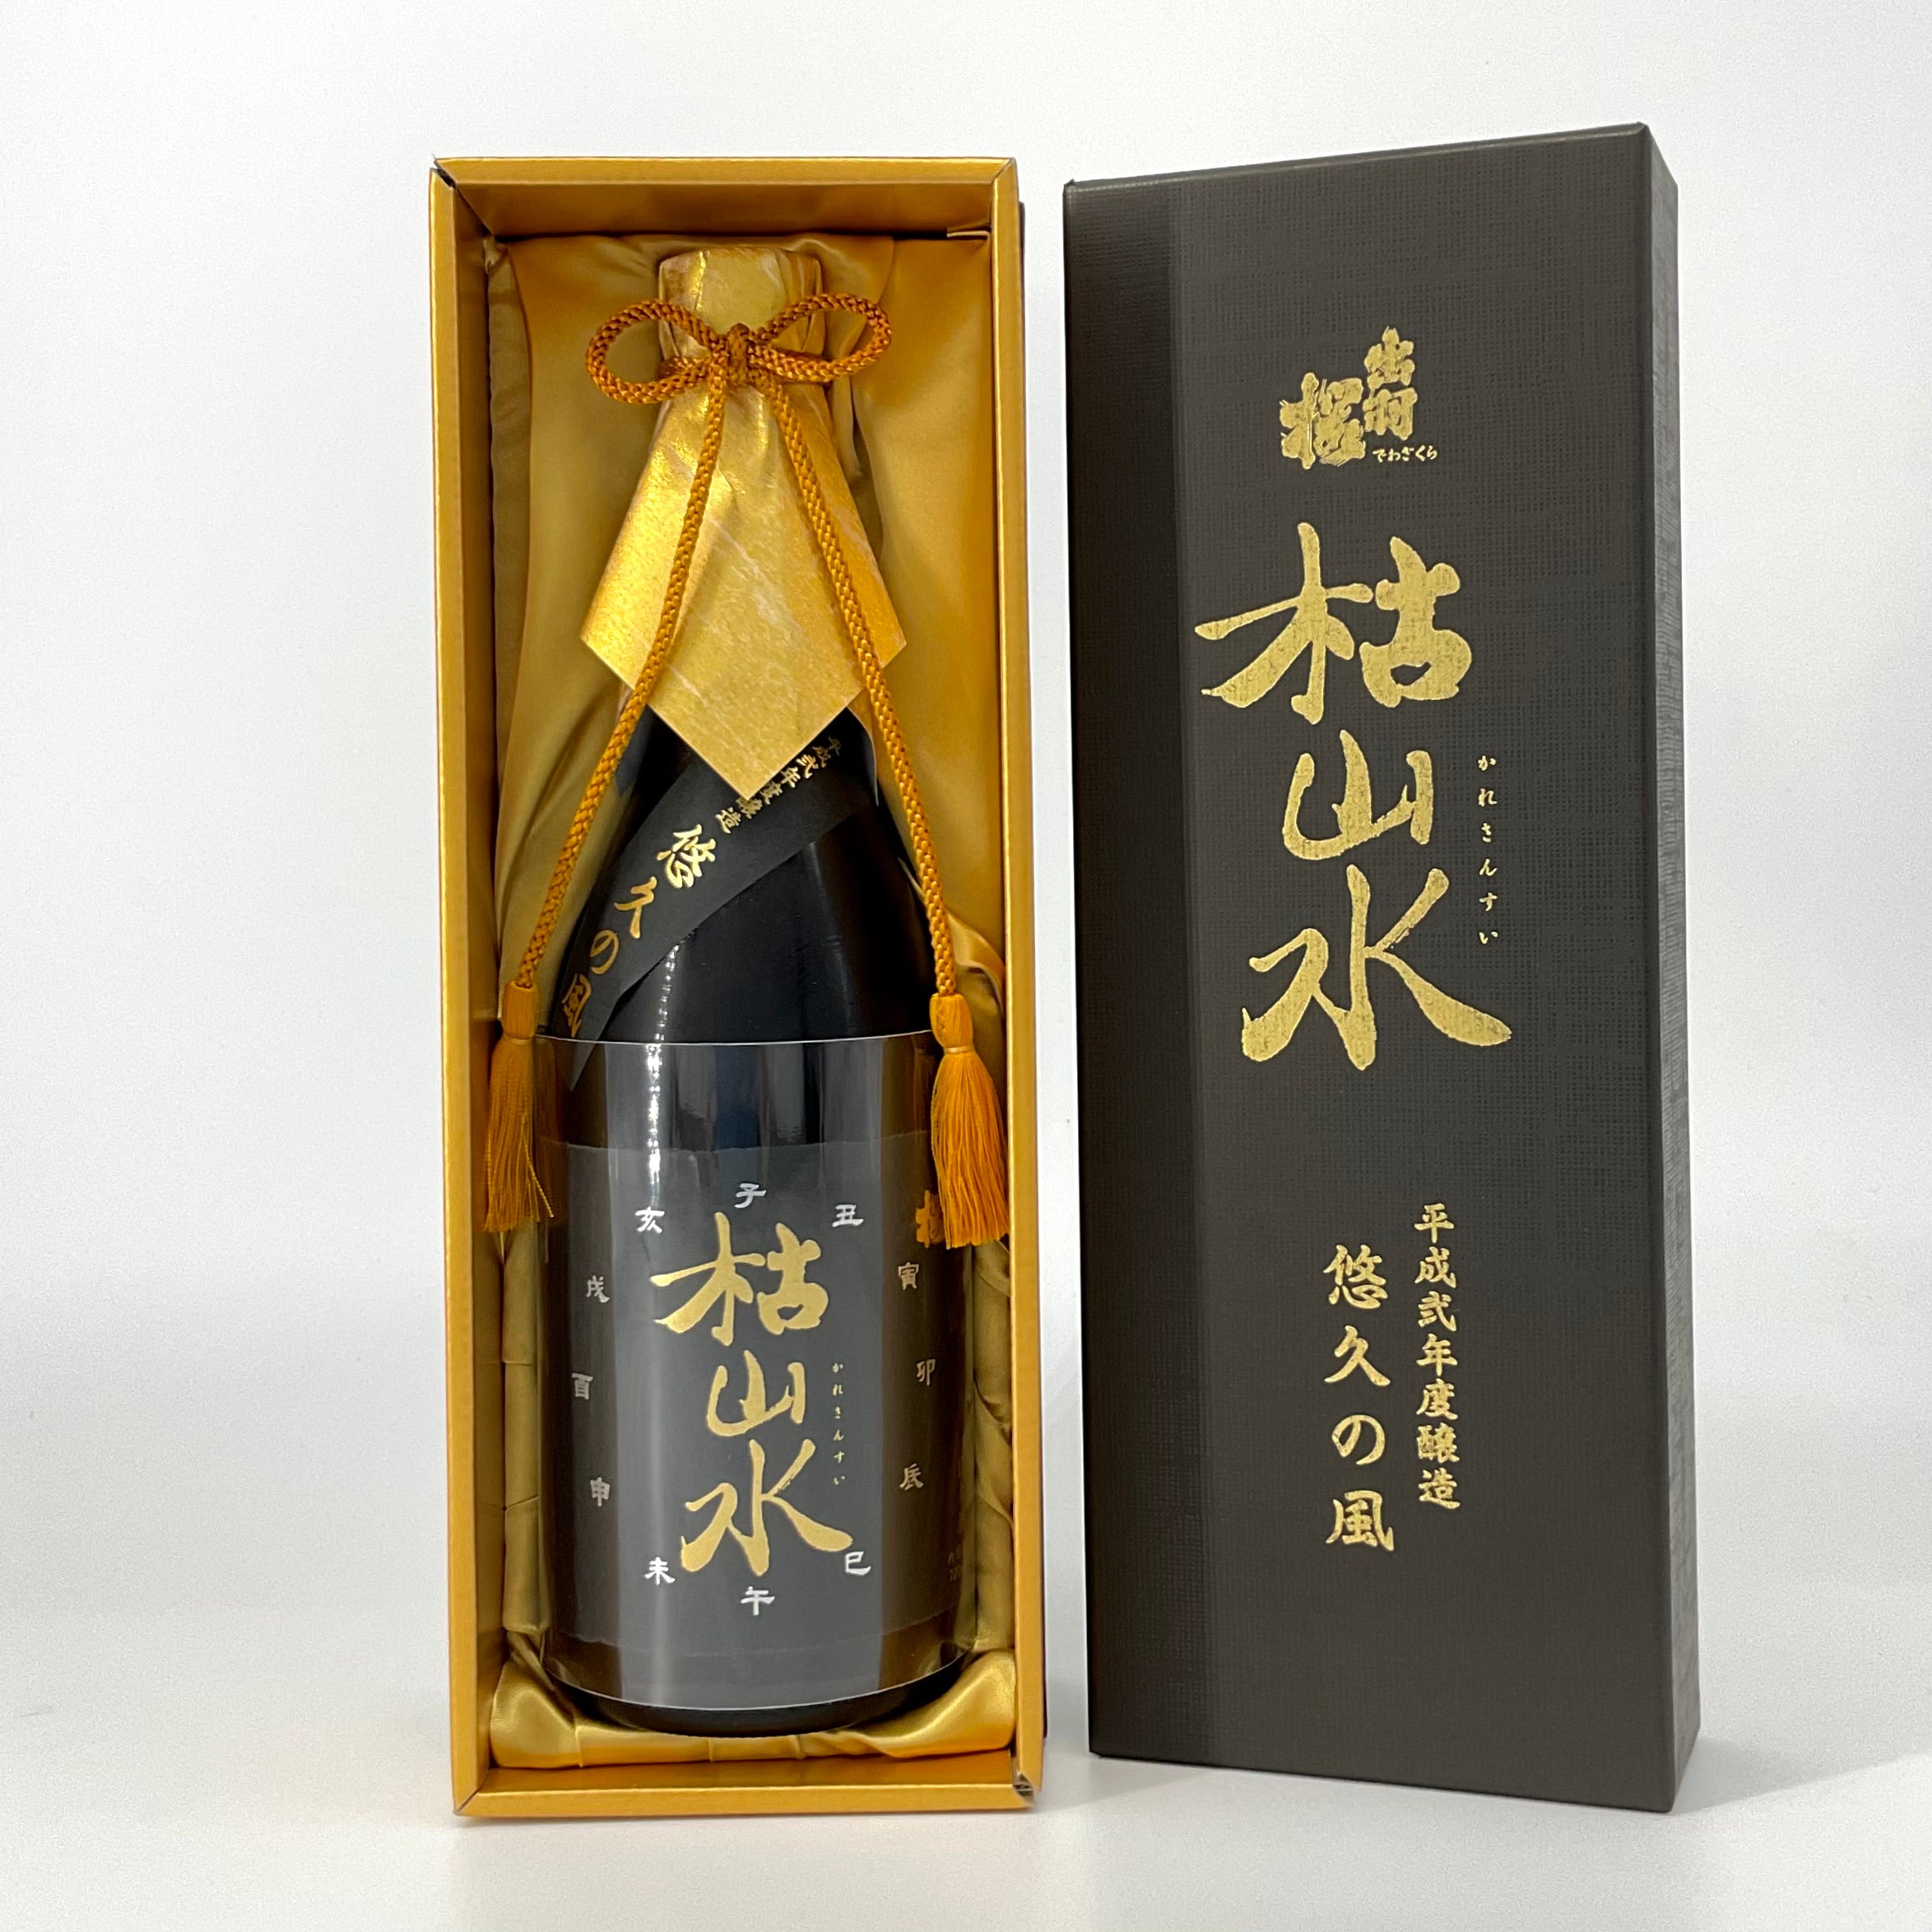 出羽桜 三十年熟成大古酒 枯山水 特別本醸造「悠久の風」 720ml – STAR 